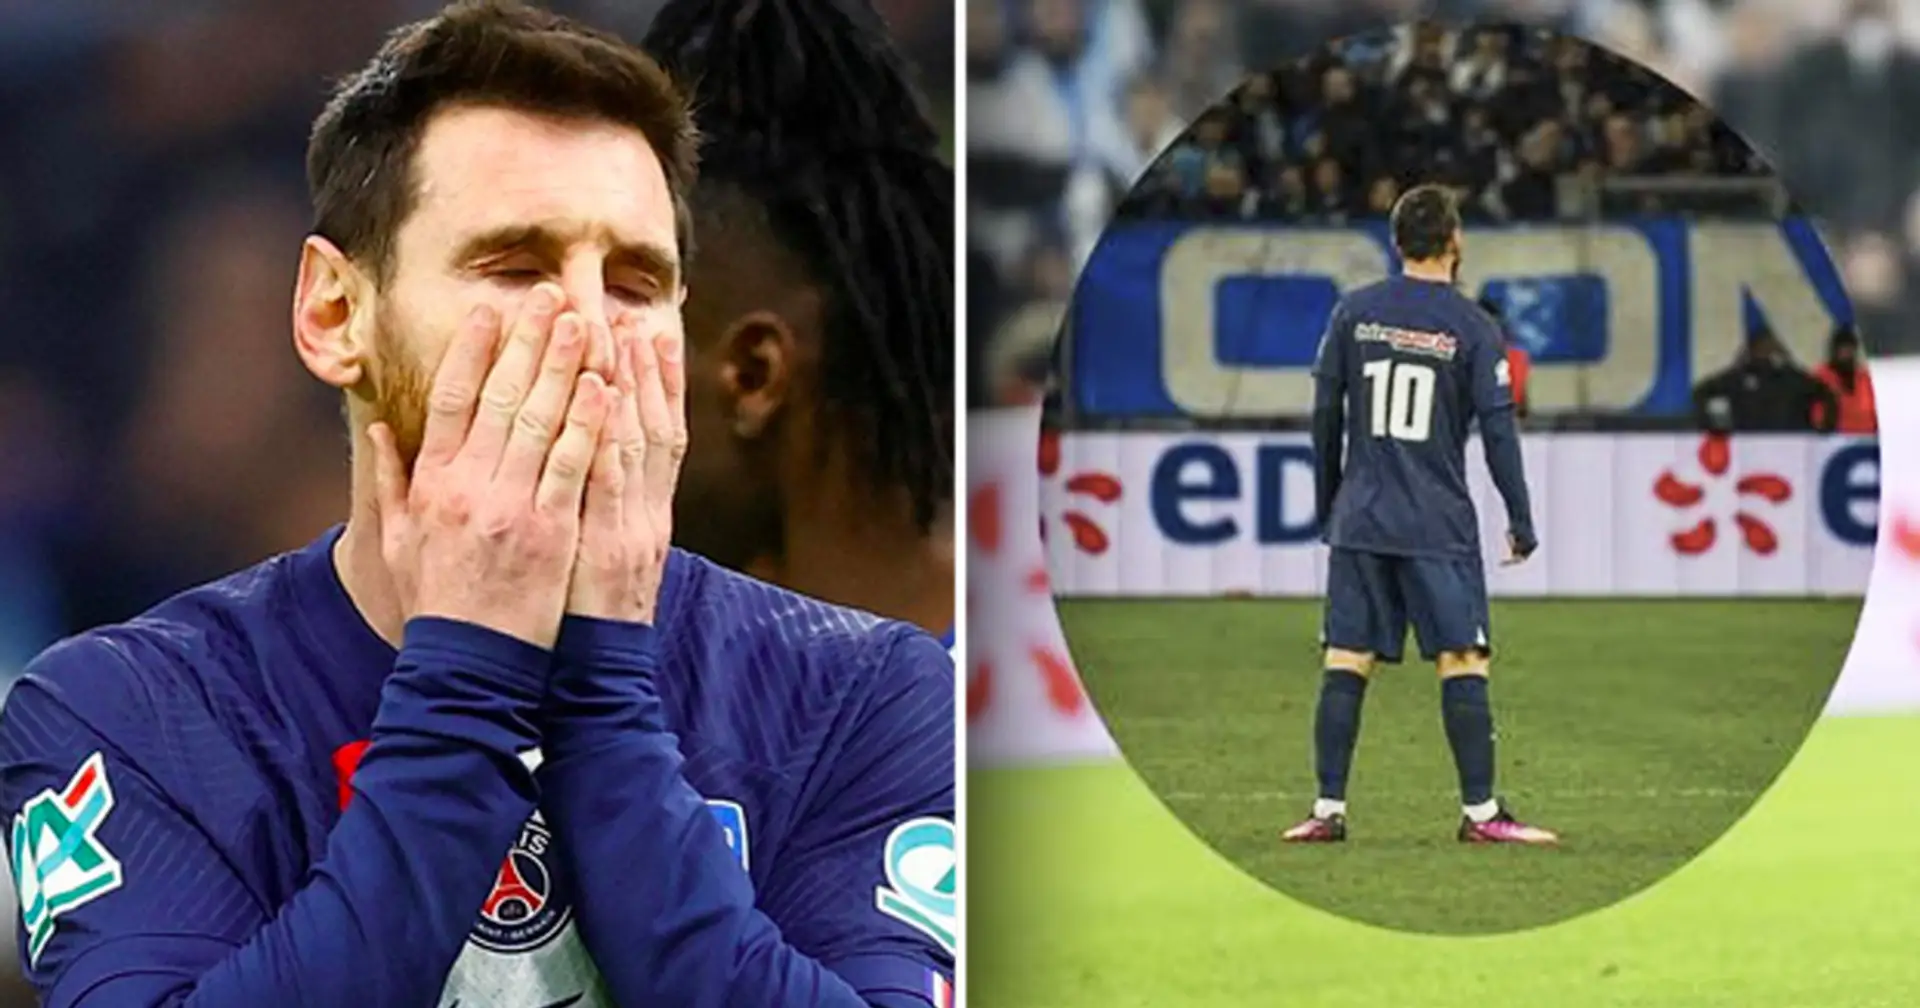 Pourquoi le n°10 est ''maudit" pour Messi au PSG - Explication